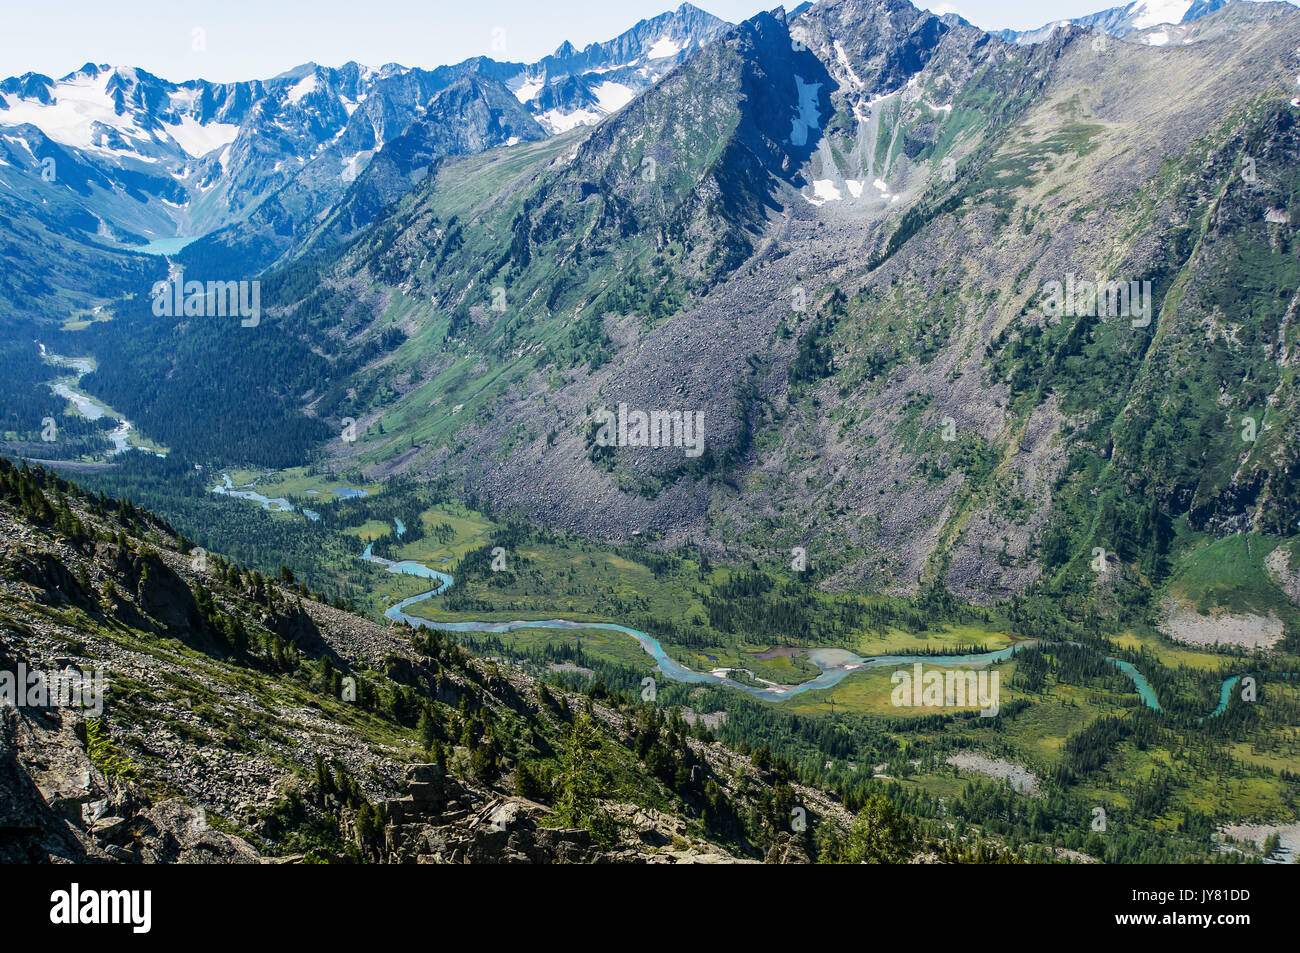 Incroyable montagne paysage. Altay Stone champignons. rivière de montagne qui coule entre de hautes montagnes couvertes de neige et s'écoule dans le magnifique la turquoise Banque D'Images